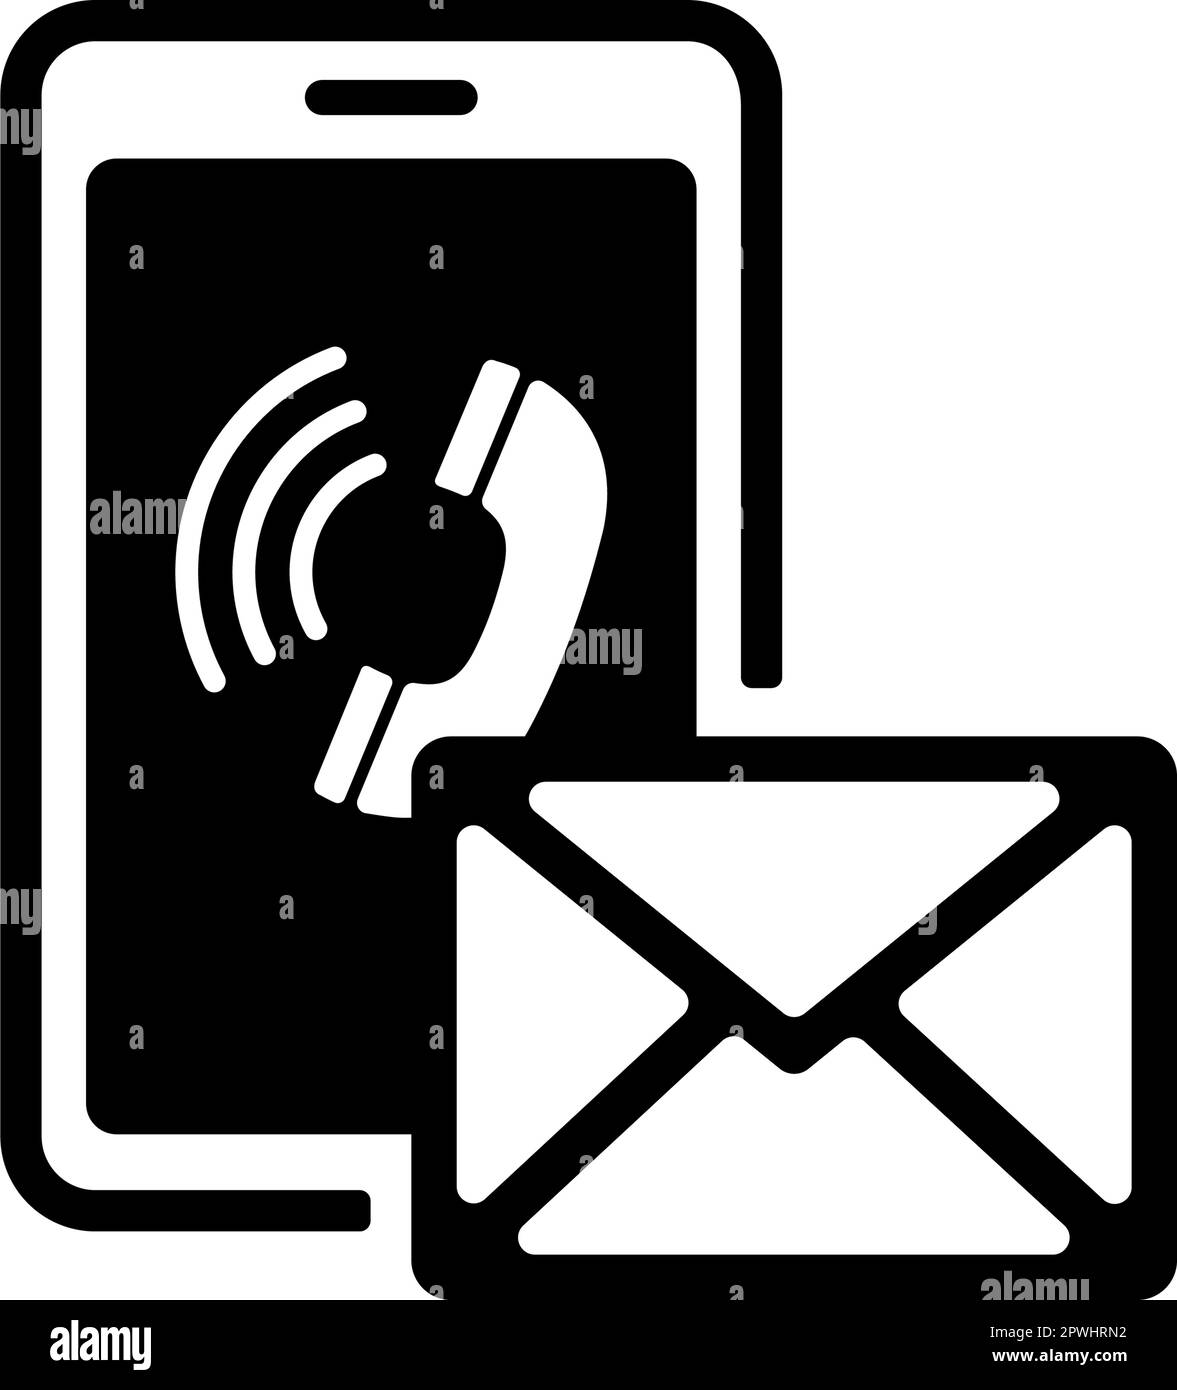 Contattaci ( email e telefono ) immagine dell'icona vettoriale Illustrazione Vettoriale